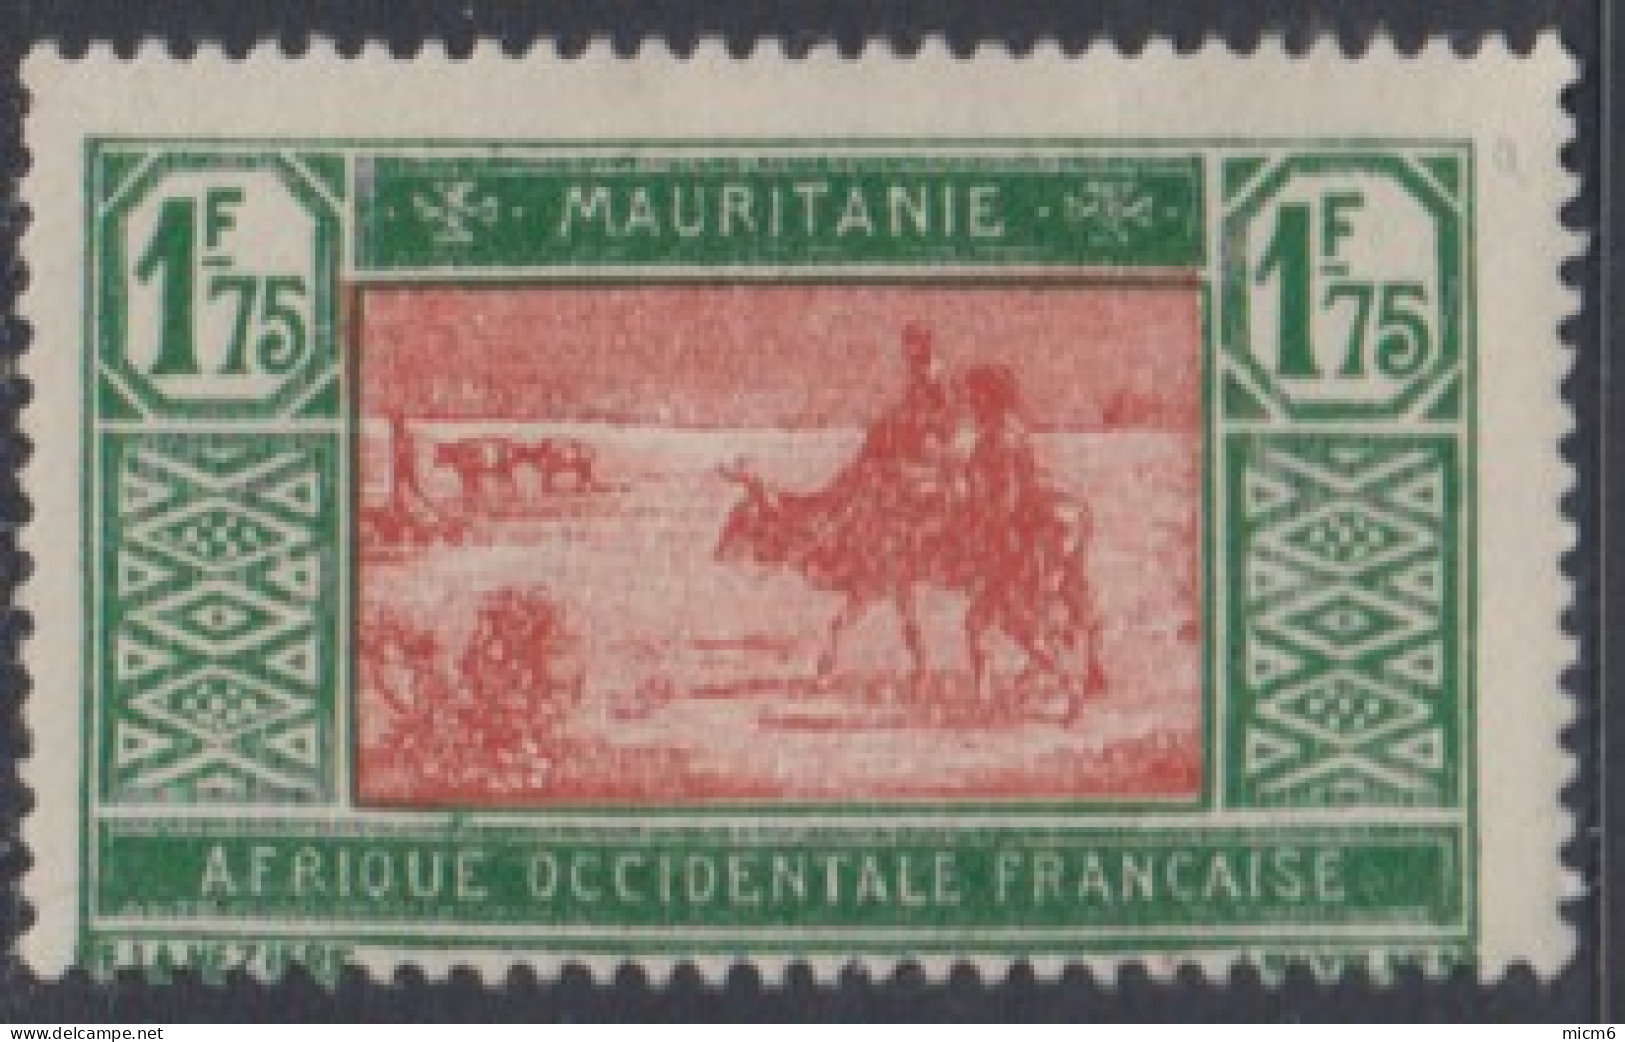 Mauritanie 1913-1944 - N° 60A (YT) N° 67 (AM) Neuf *. - Nuovi